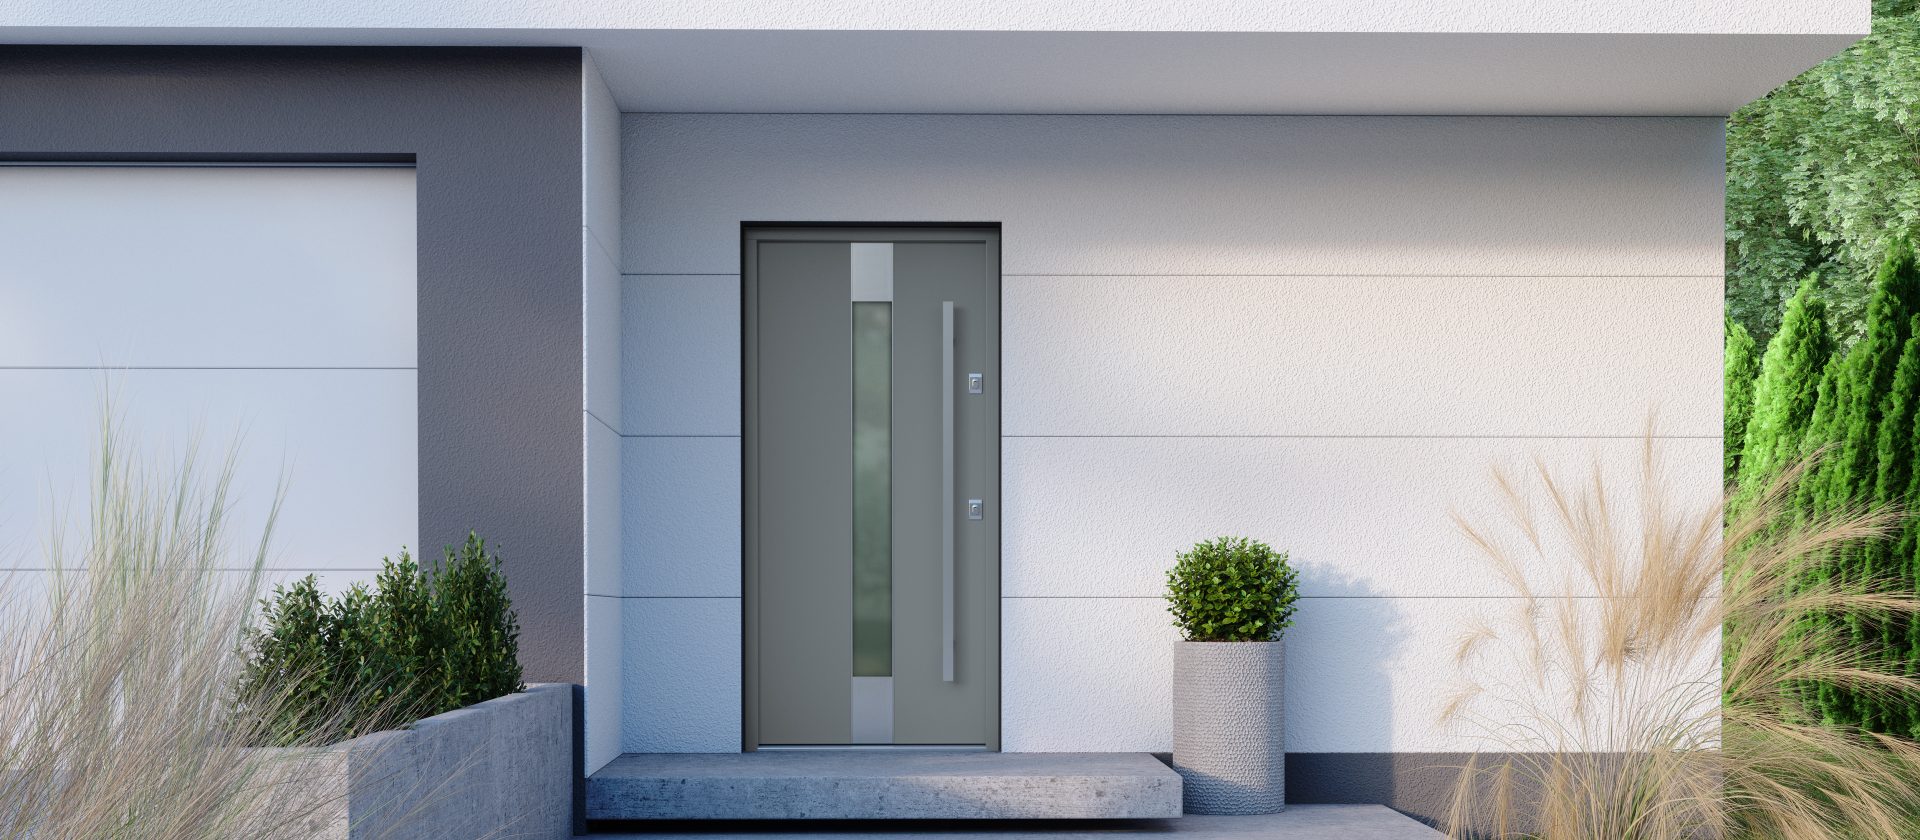 Konfigurator wizualny drzwi Gerda – stwórz swoje wymarzone drzwi do domu lub mieszkania